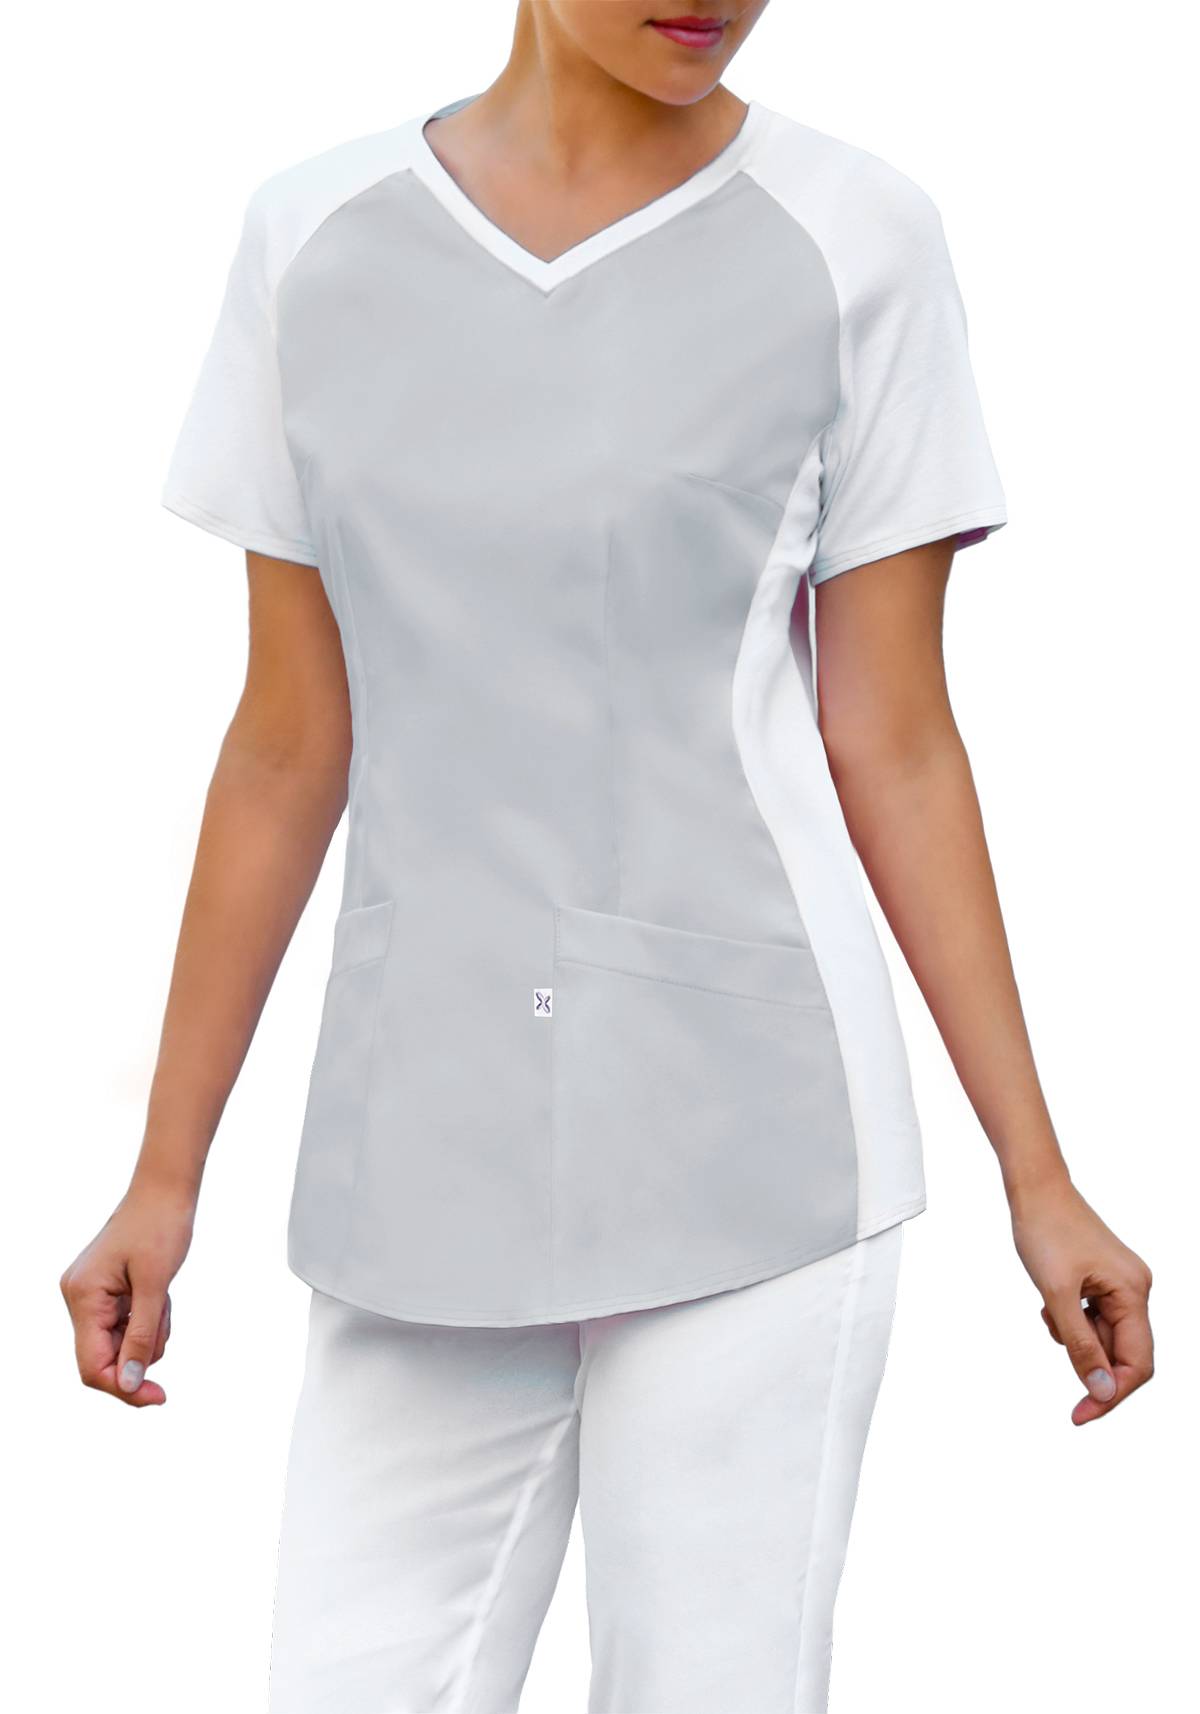 Bluza medyczna z wygodną, elastyczną dzianiną (kolor jasny szary, BE2-JS)